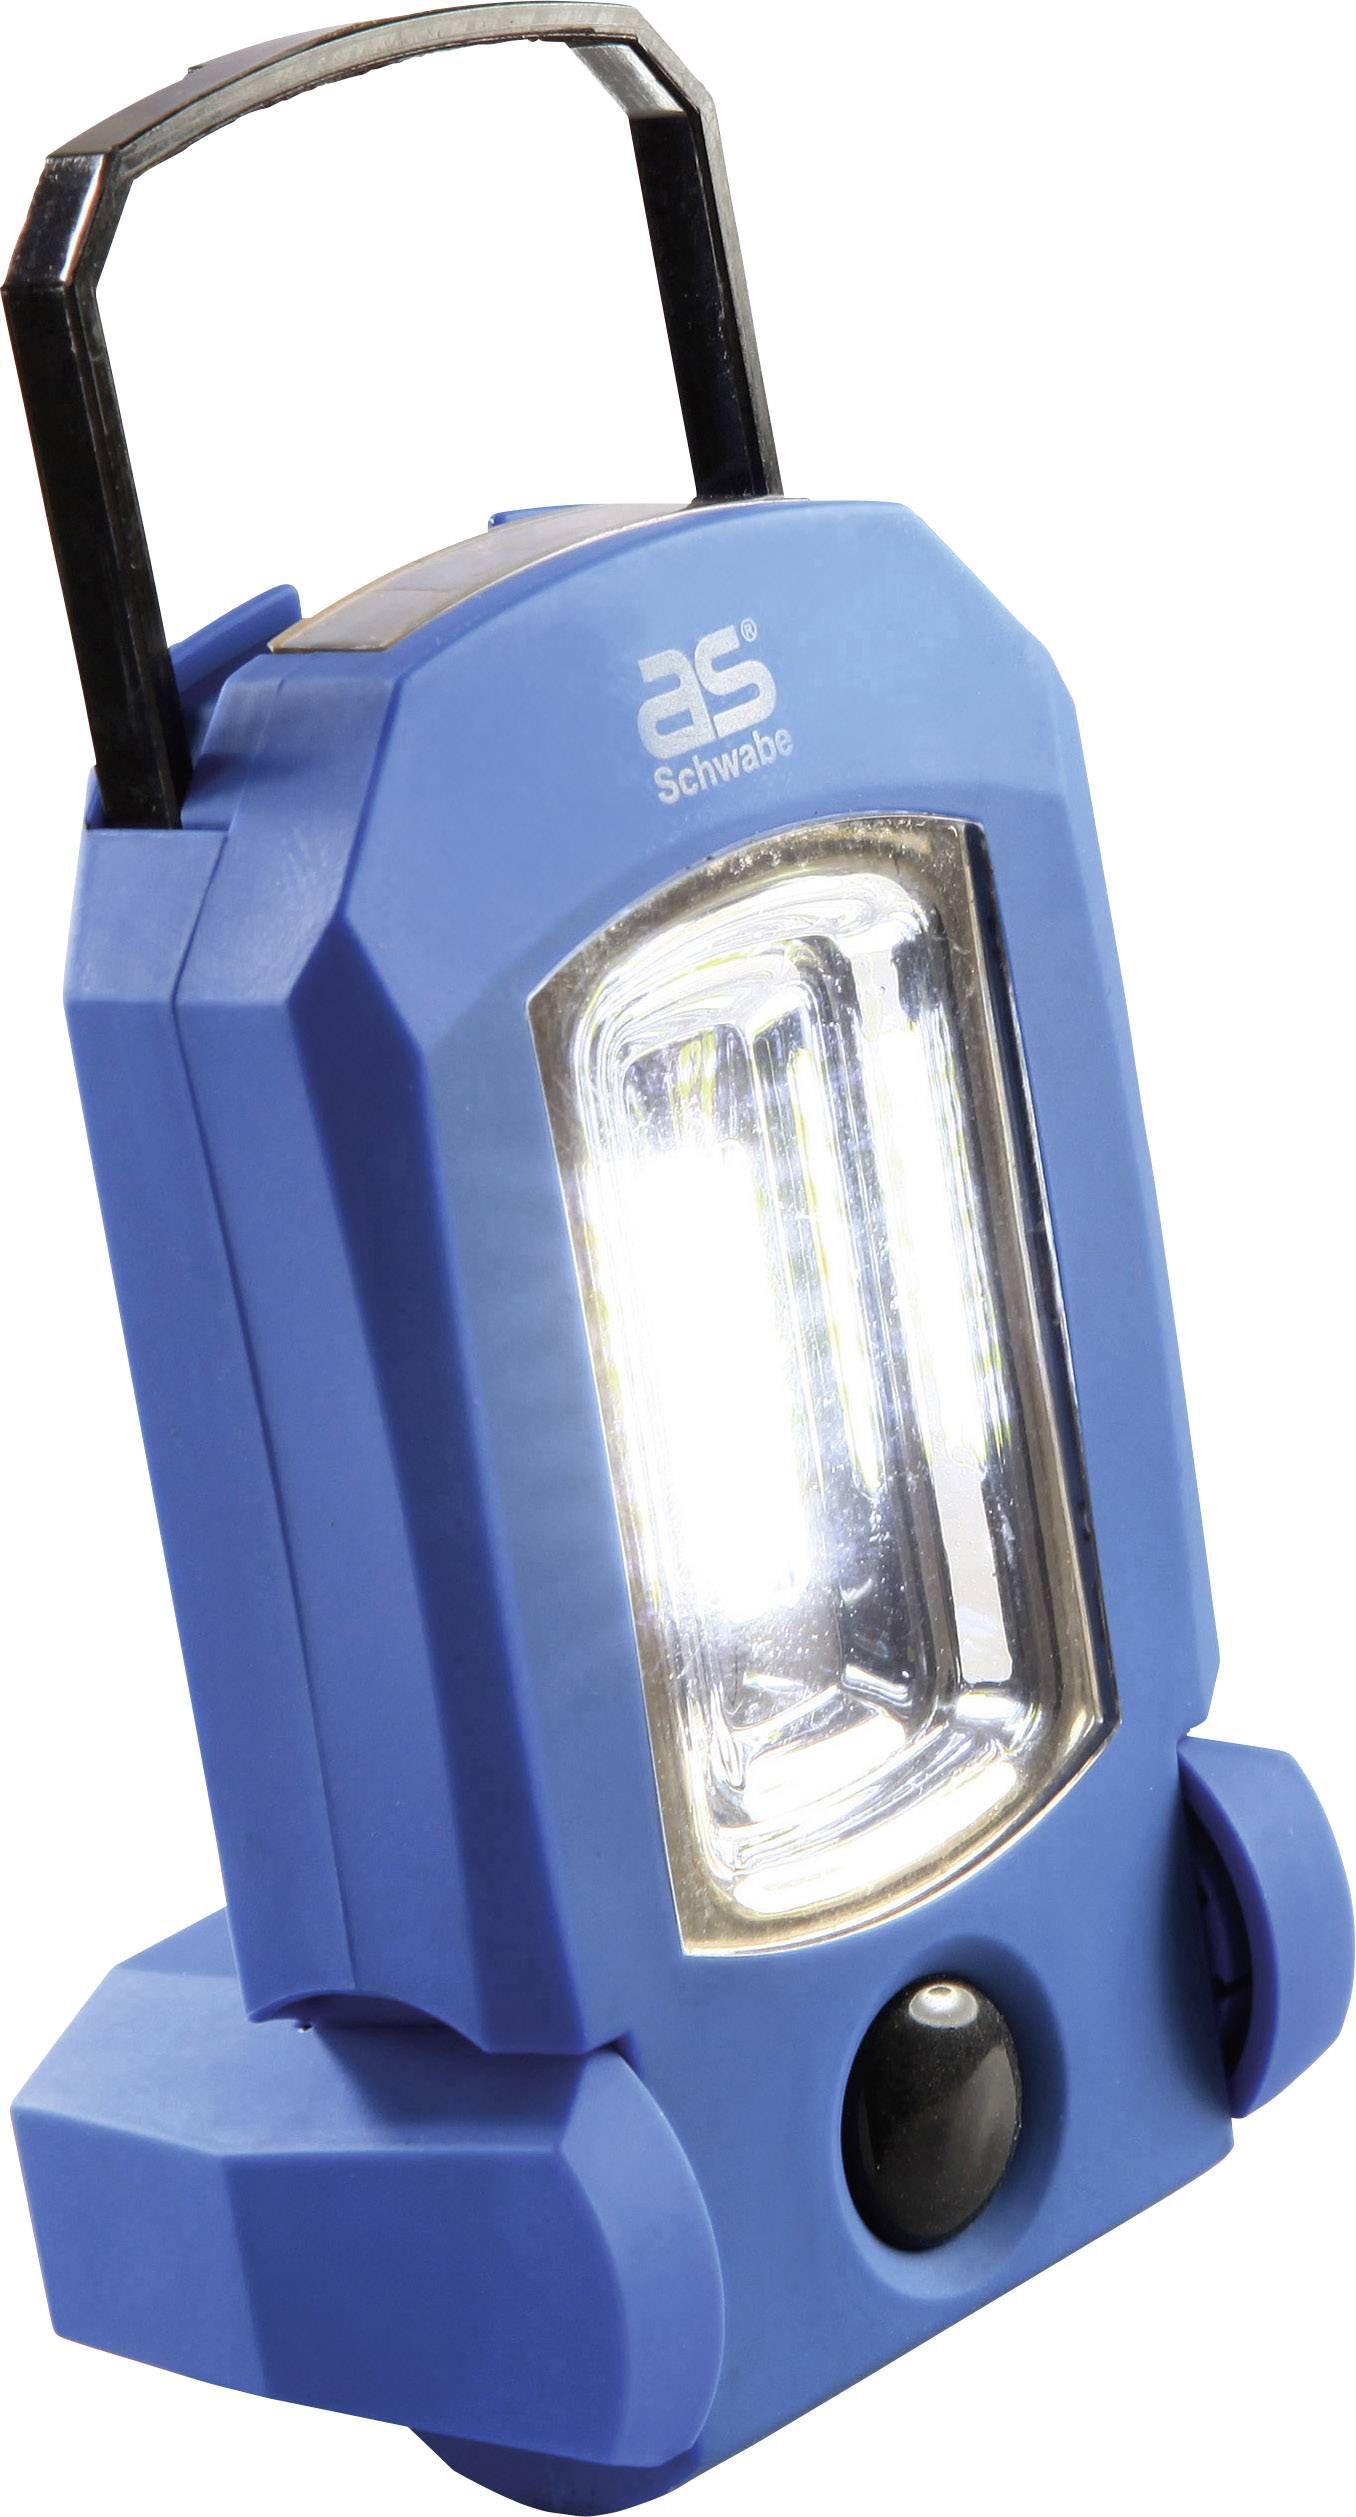 AS-SCHWABE COB-LED, LED Arbeitsleuchte akkubetrieben as - Schwabe 42803 EVO 1 3 W 85 lm